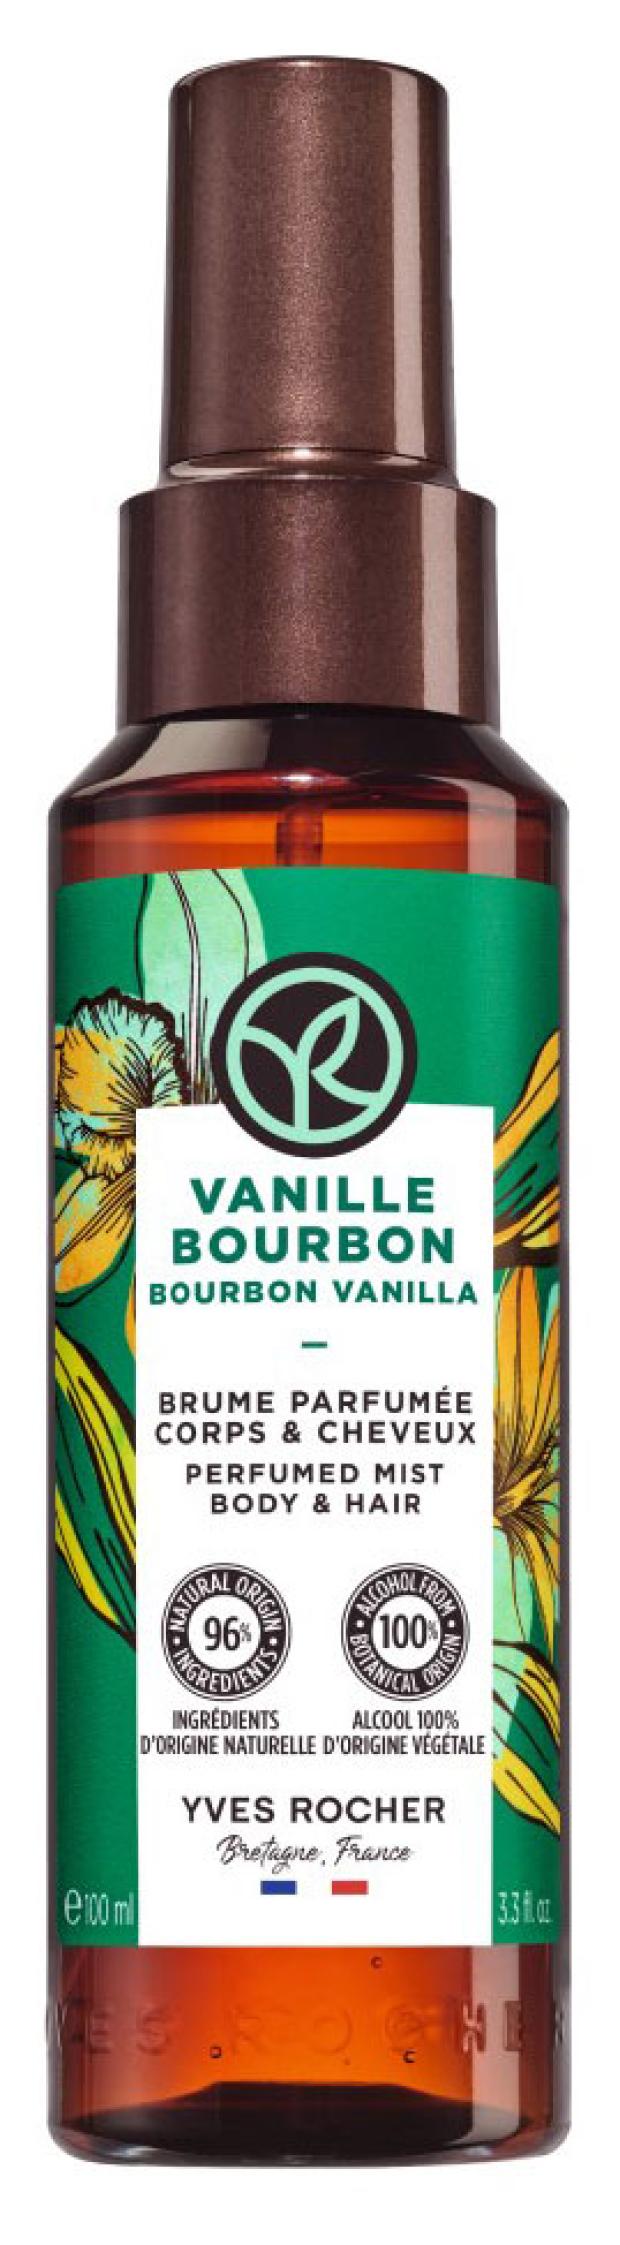 спрей парфюмированный для тела и волос yves rocher бурбонская ваниль